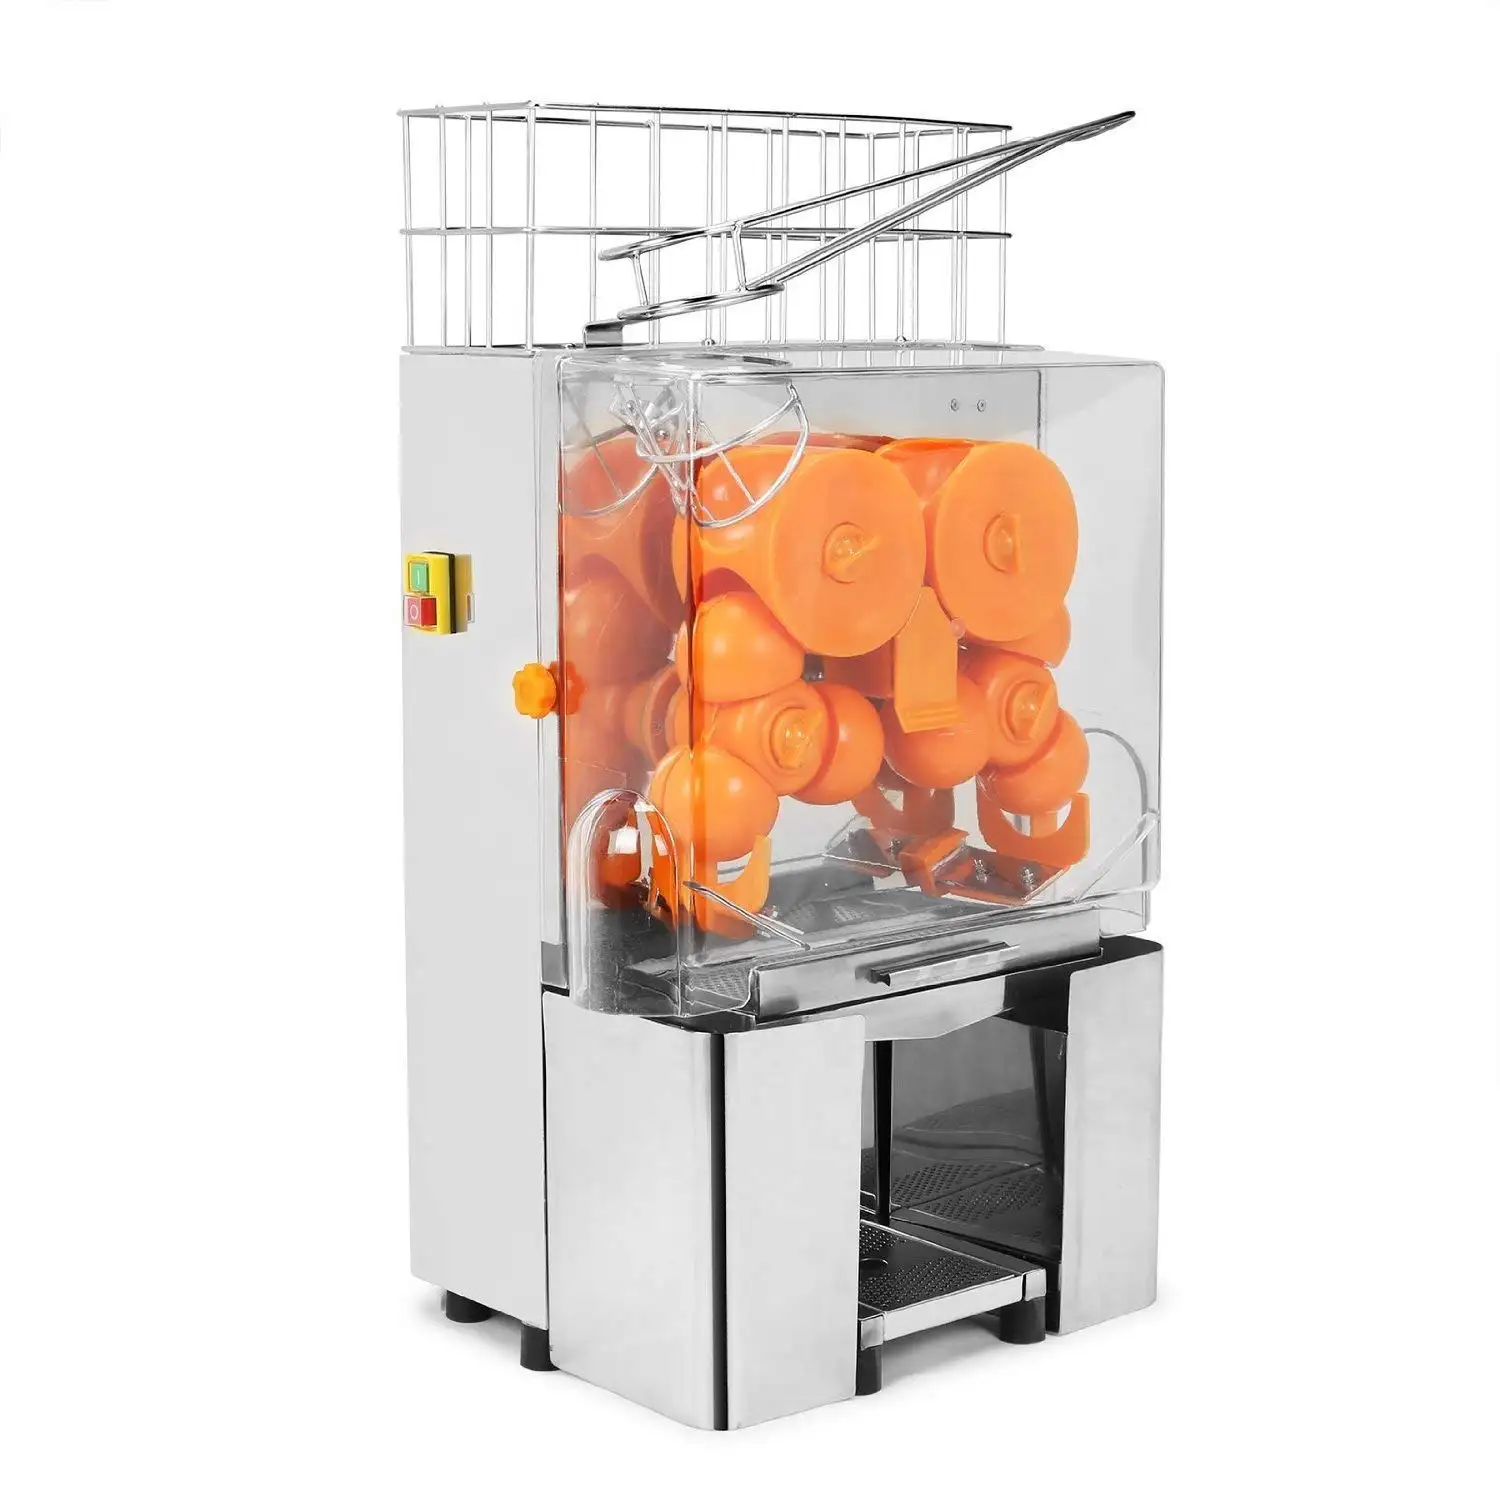 Máquina Eléctrica exprimidora de naranjas